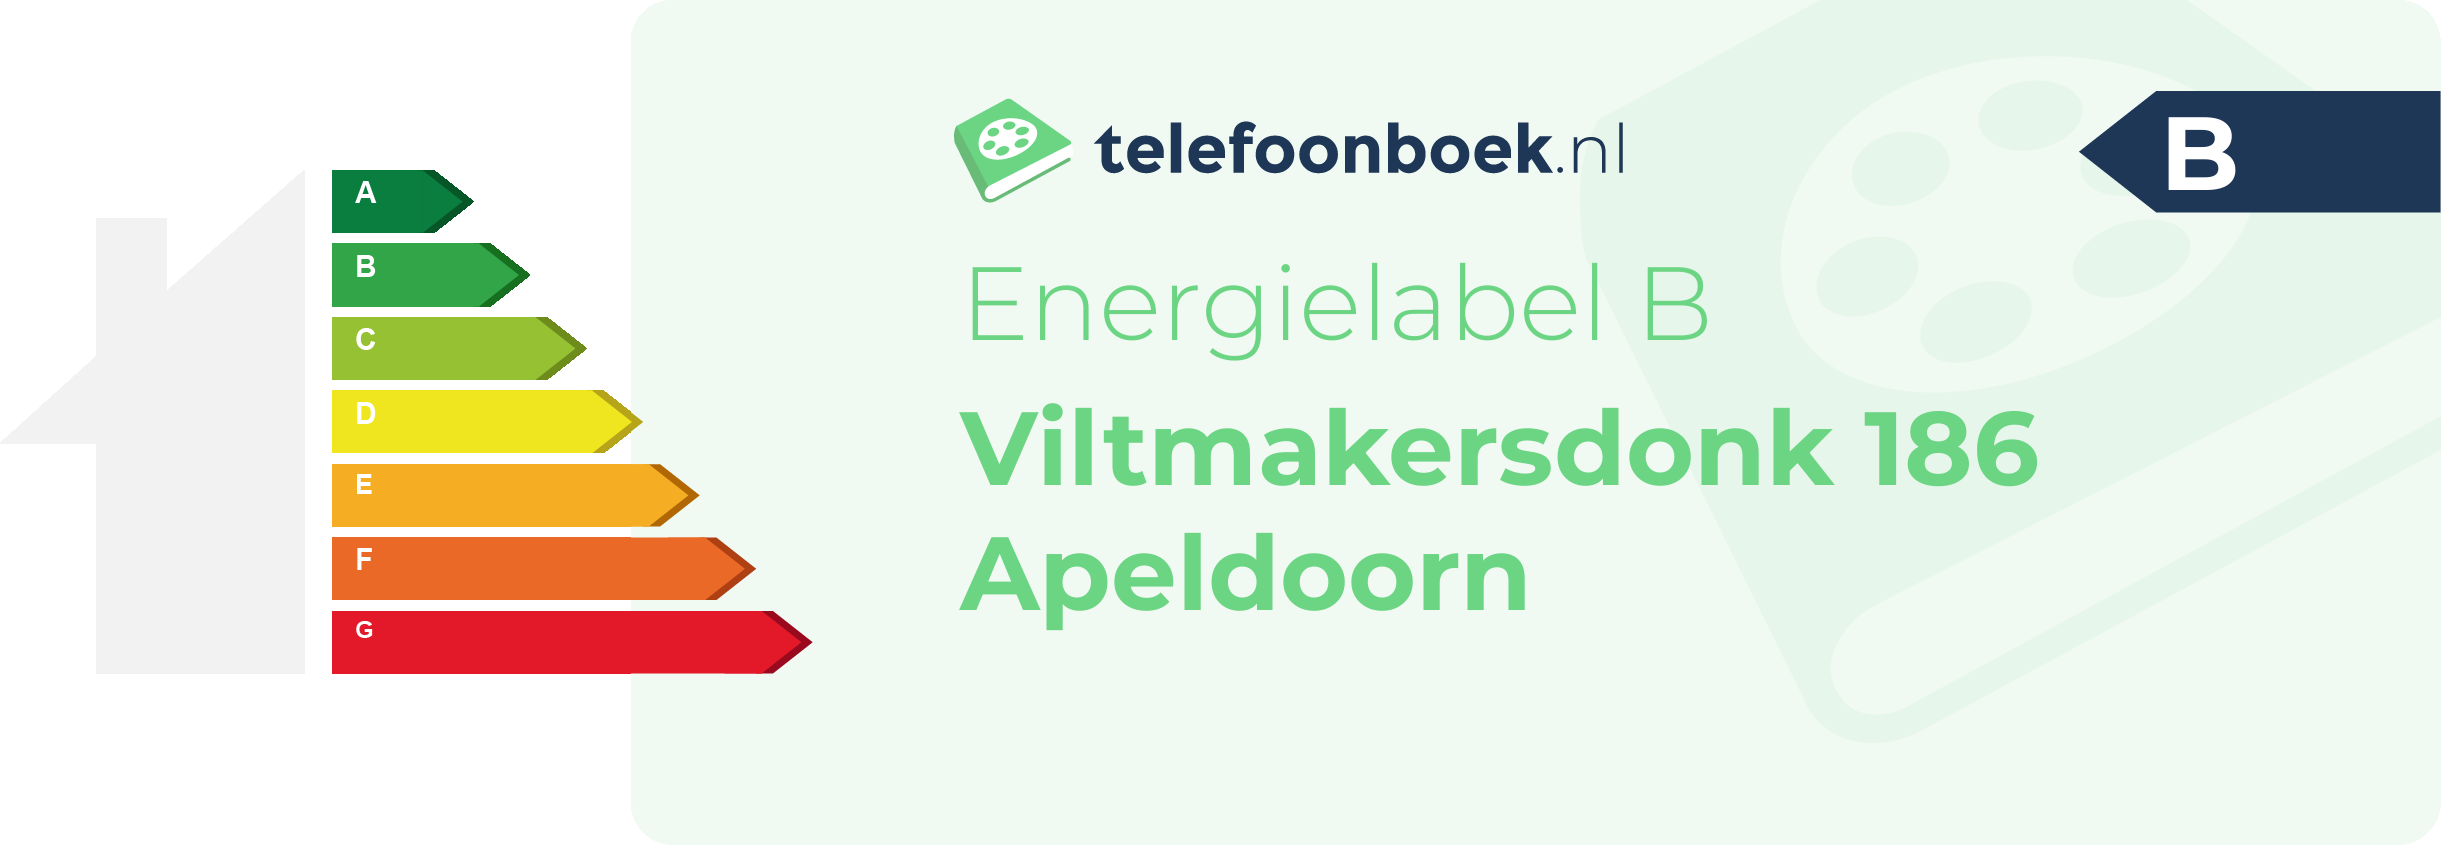 Energielabel Viltmakersdonk 186 Apeldoorn